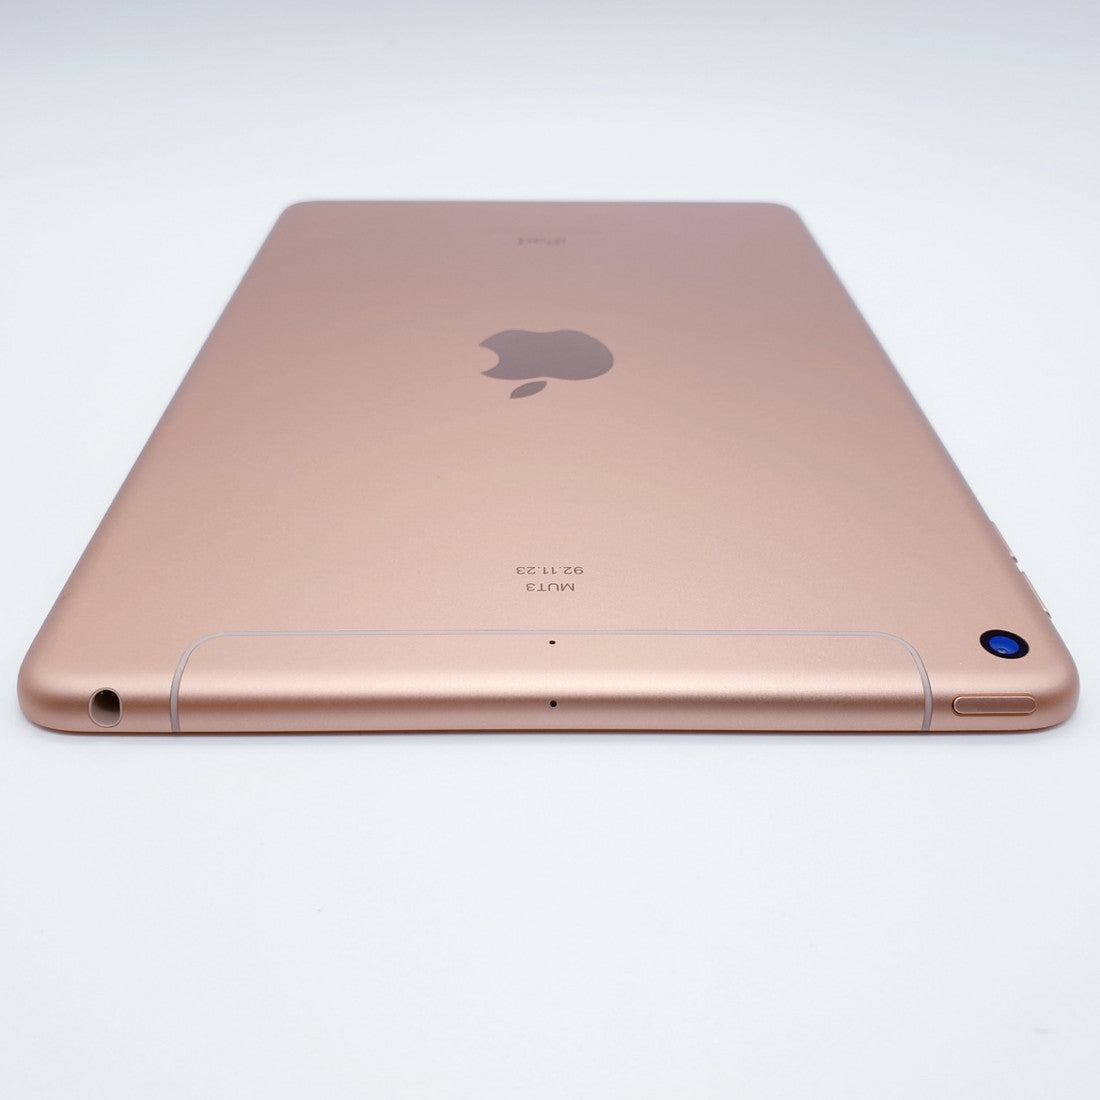 Apple A2133 iPad Mini5 (64GB) IPadMini5 (2019) Wifi